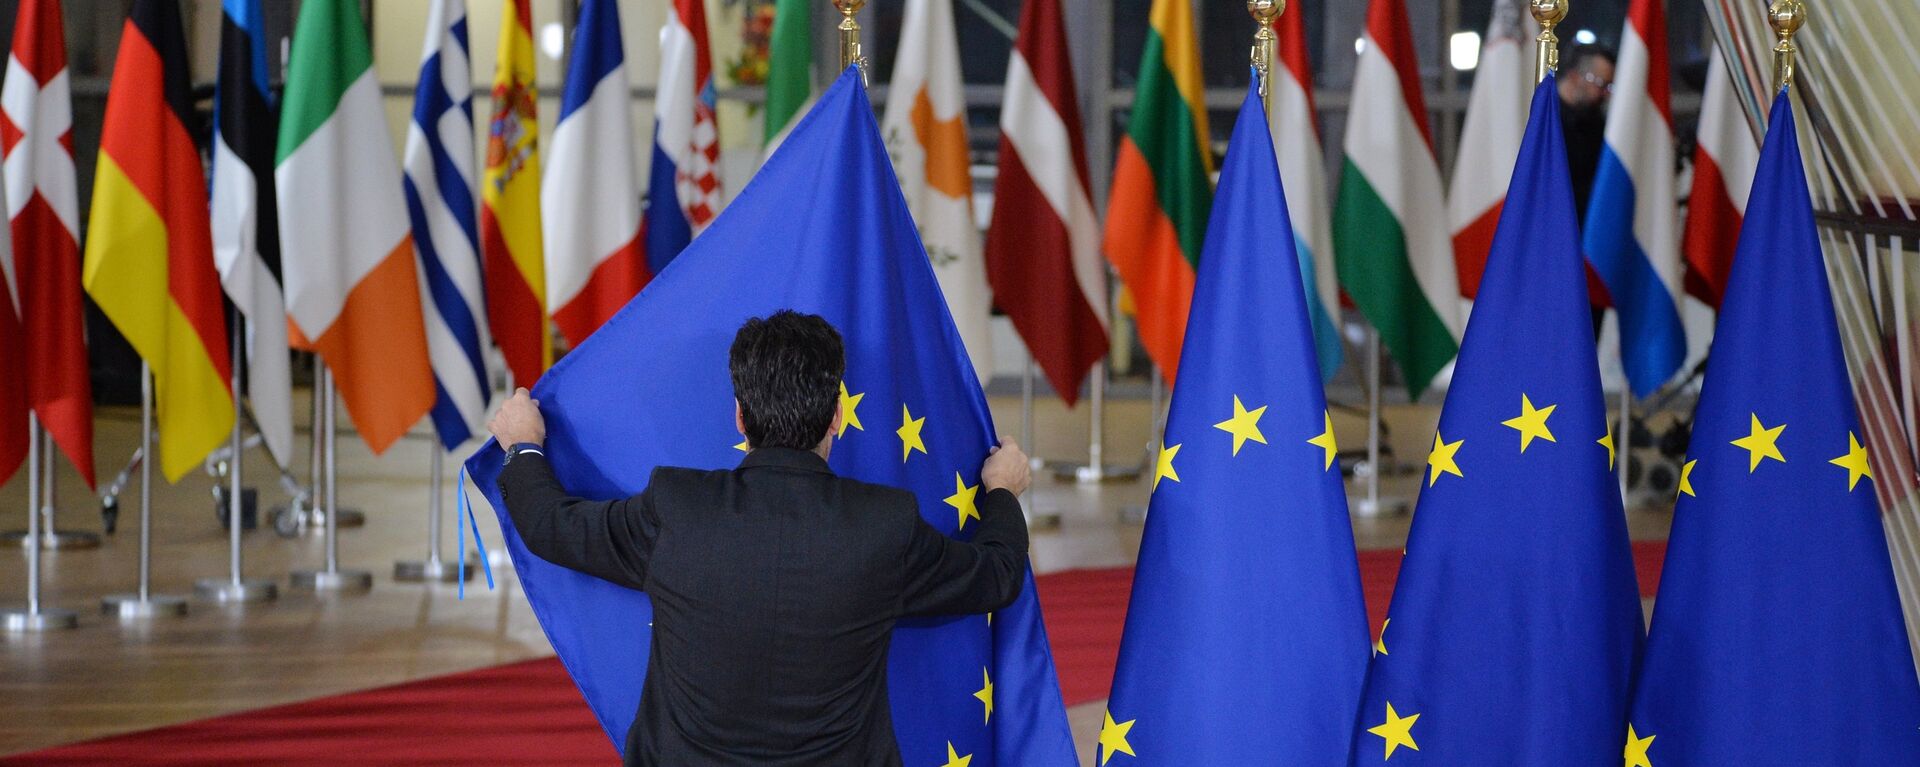 Las banderas de los países de la UE y bandera de la UE en Bruselas - Sputnik Mundo, 1920, 12.08.2021